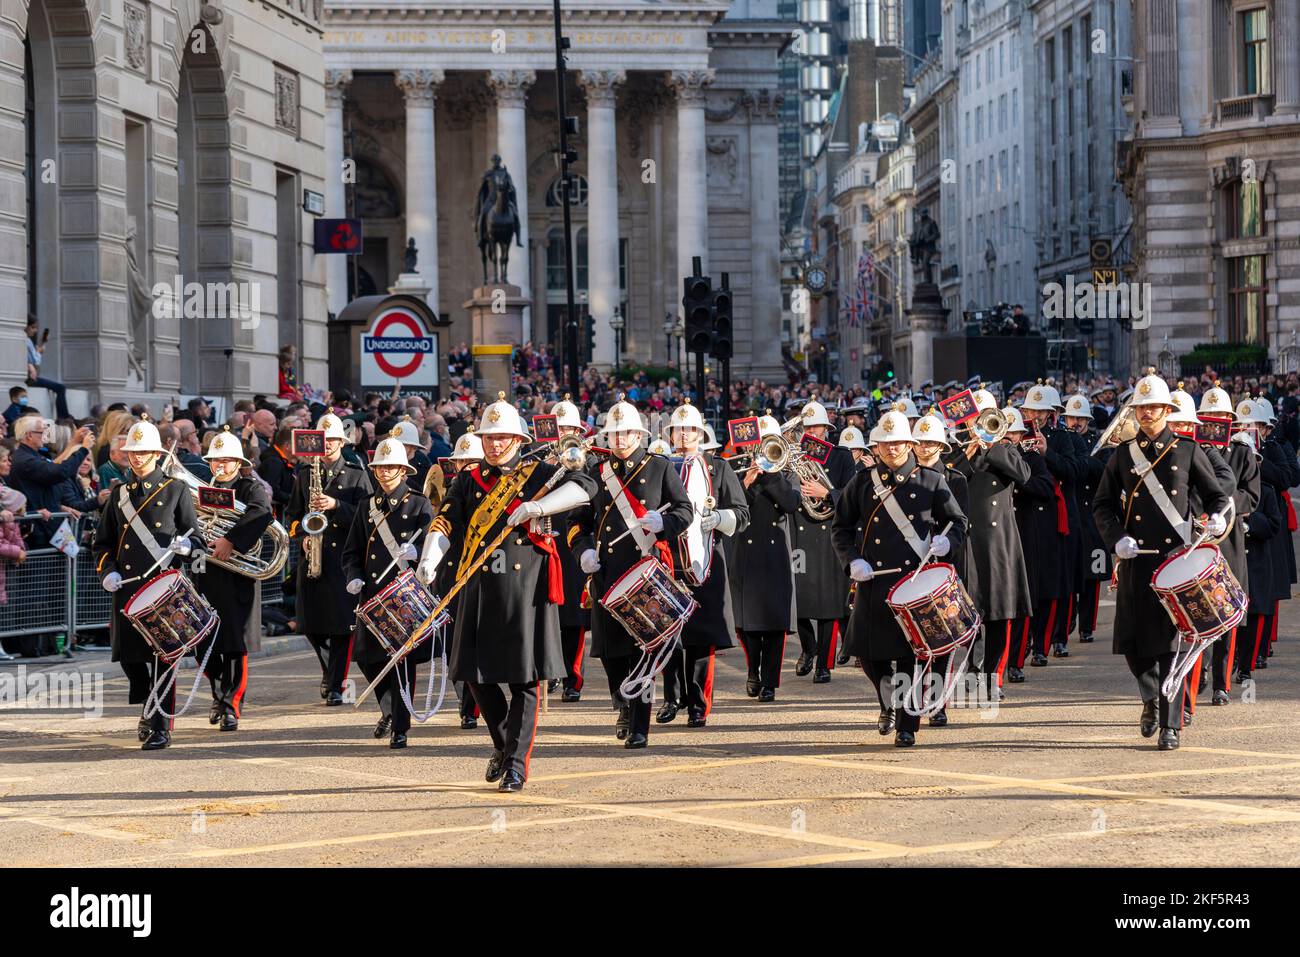 Royal Marines Band du centre d'entraînement Commando au Lord Mayor's Show Parade dans la ville de Londres, Royaume-Uni. Bande de marche Banque D'Images